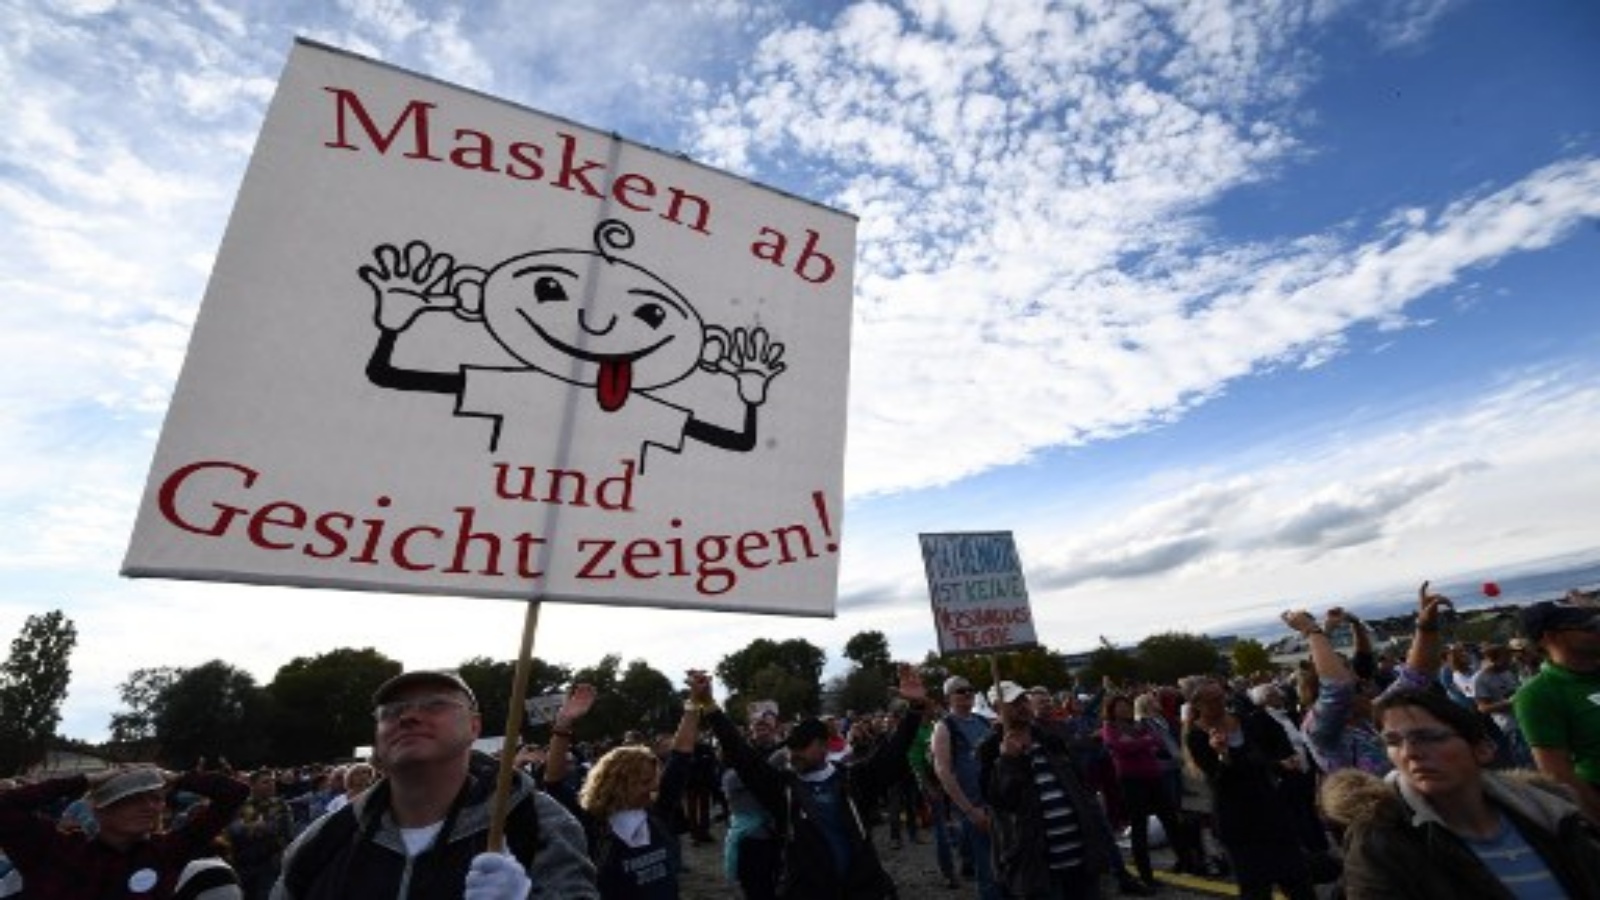 متظاهرون يحملون لافتة كتب عليها `` انزع القناع واظهر وجهك '' أثناء مشاركتهم في احتجاج ضد الأقنعة والقيود المفروضة على الفيروسات خلال جائحة فيروس كورونا الجديد Covid-19 المستمر في كونستانس جنوب ألمانيا في 4 أكتوبر 2020